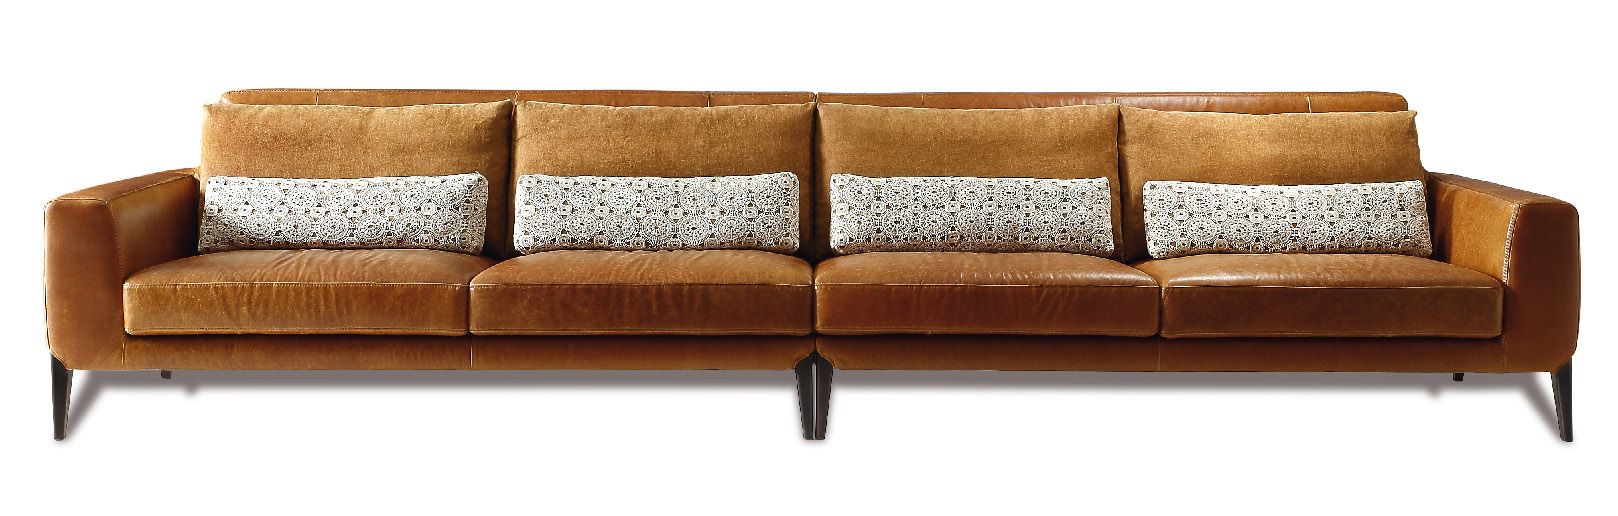 Miller sofa by Ditre Italia